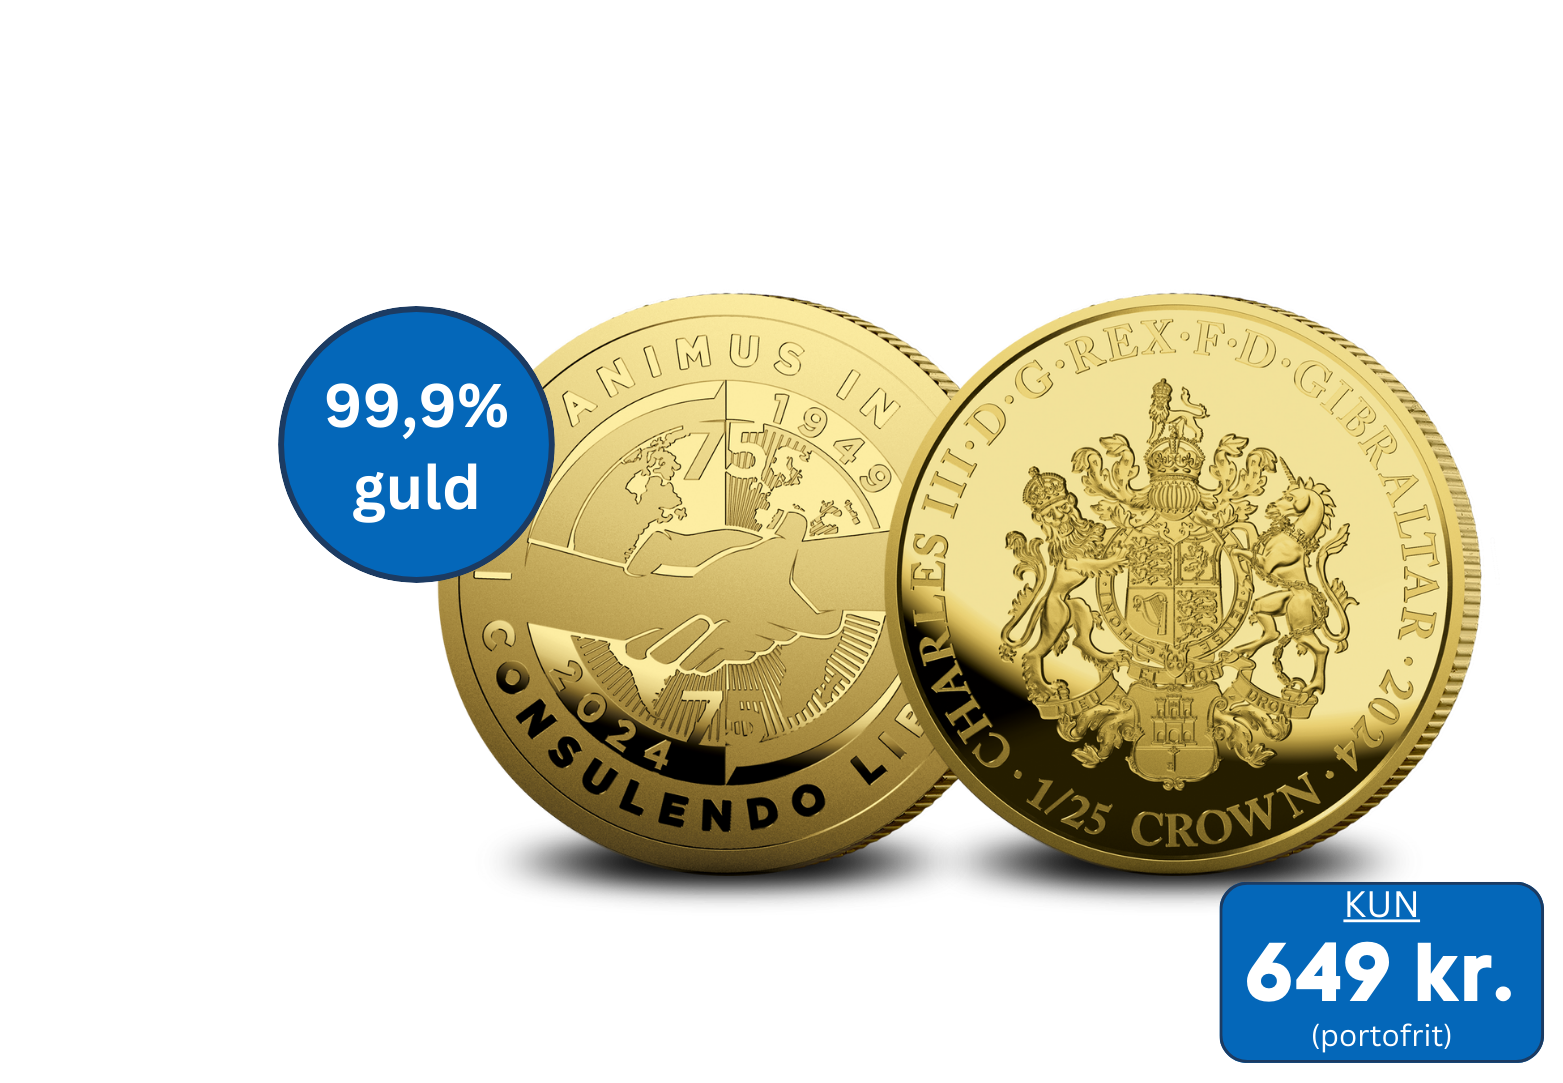 Officiel smuk guldmønt der hylder 75-året for Nato